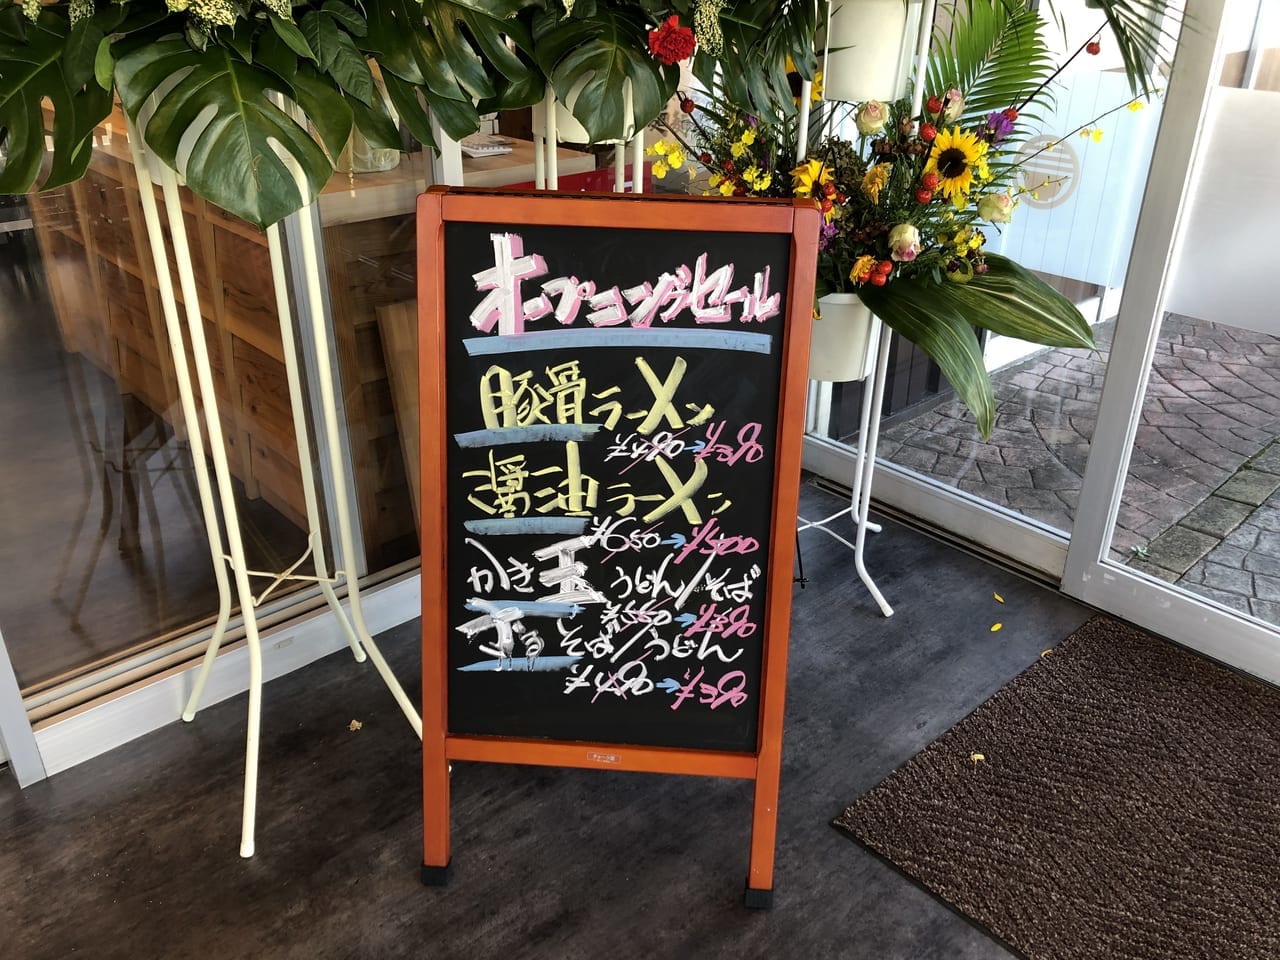 麺麺麺2019年秋リニューアルオープン